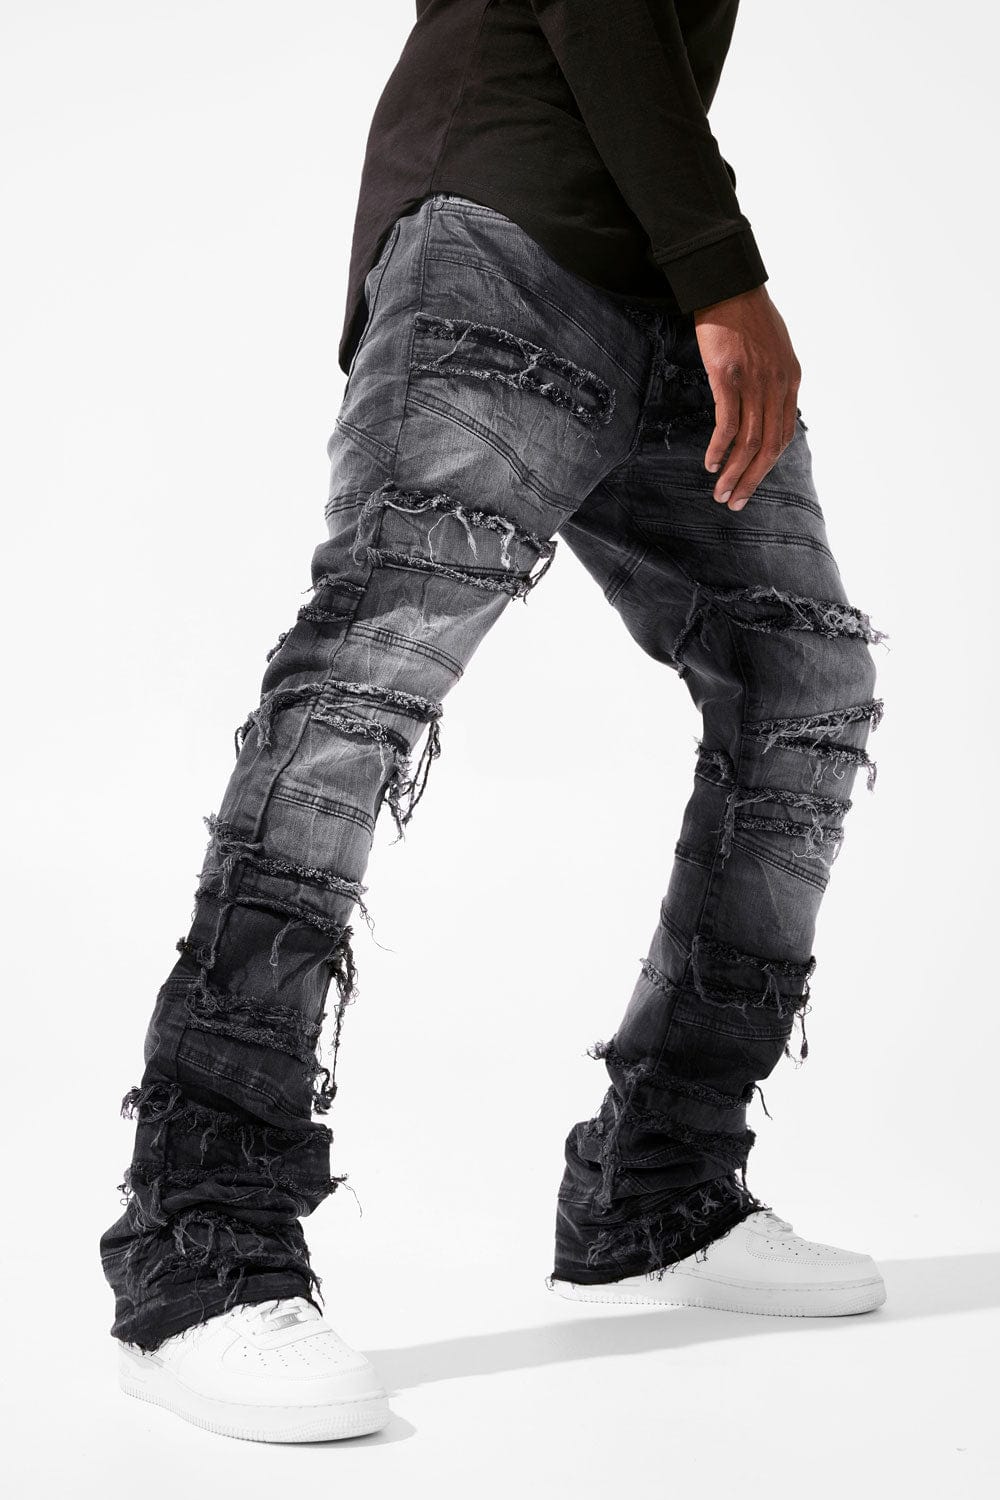 Cysm Jeans  Black Ripped Jeans - Gem